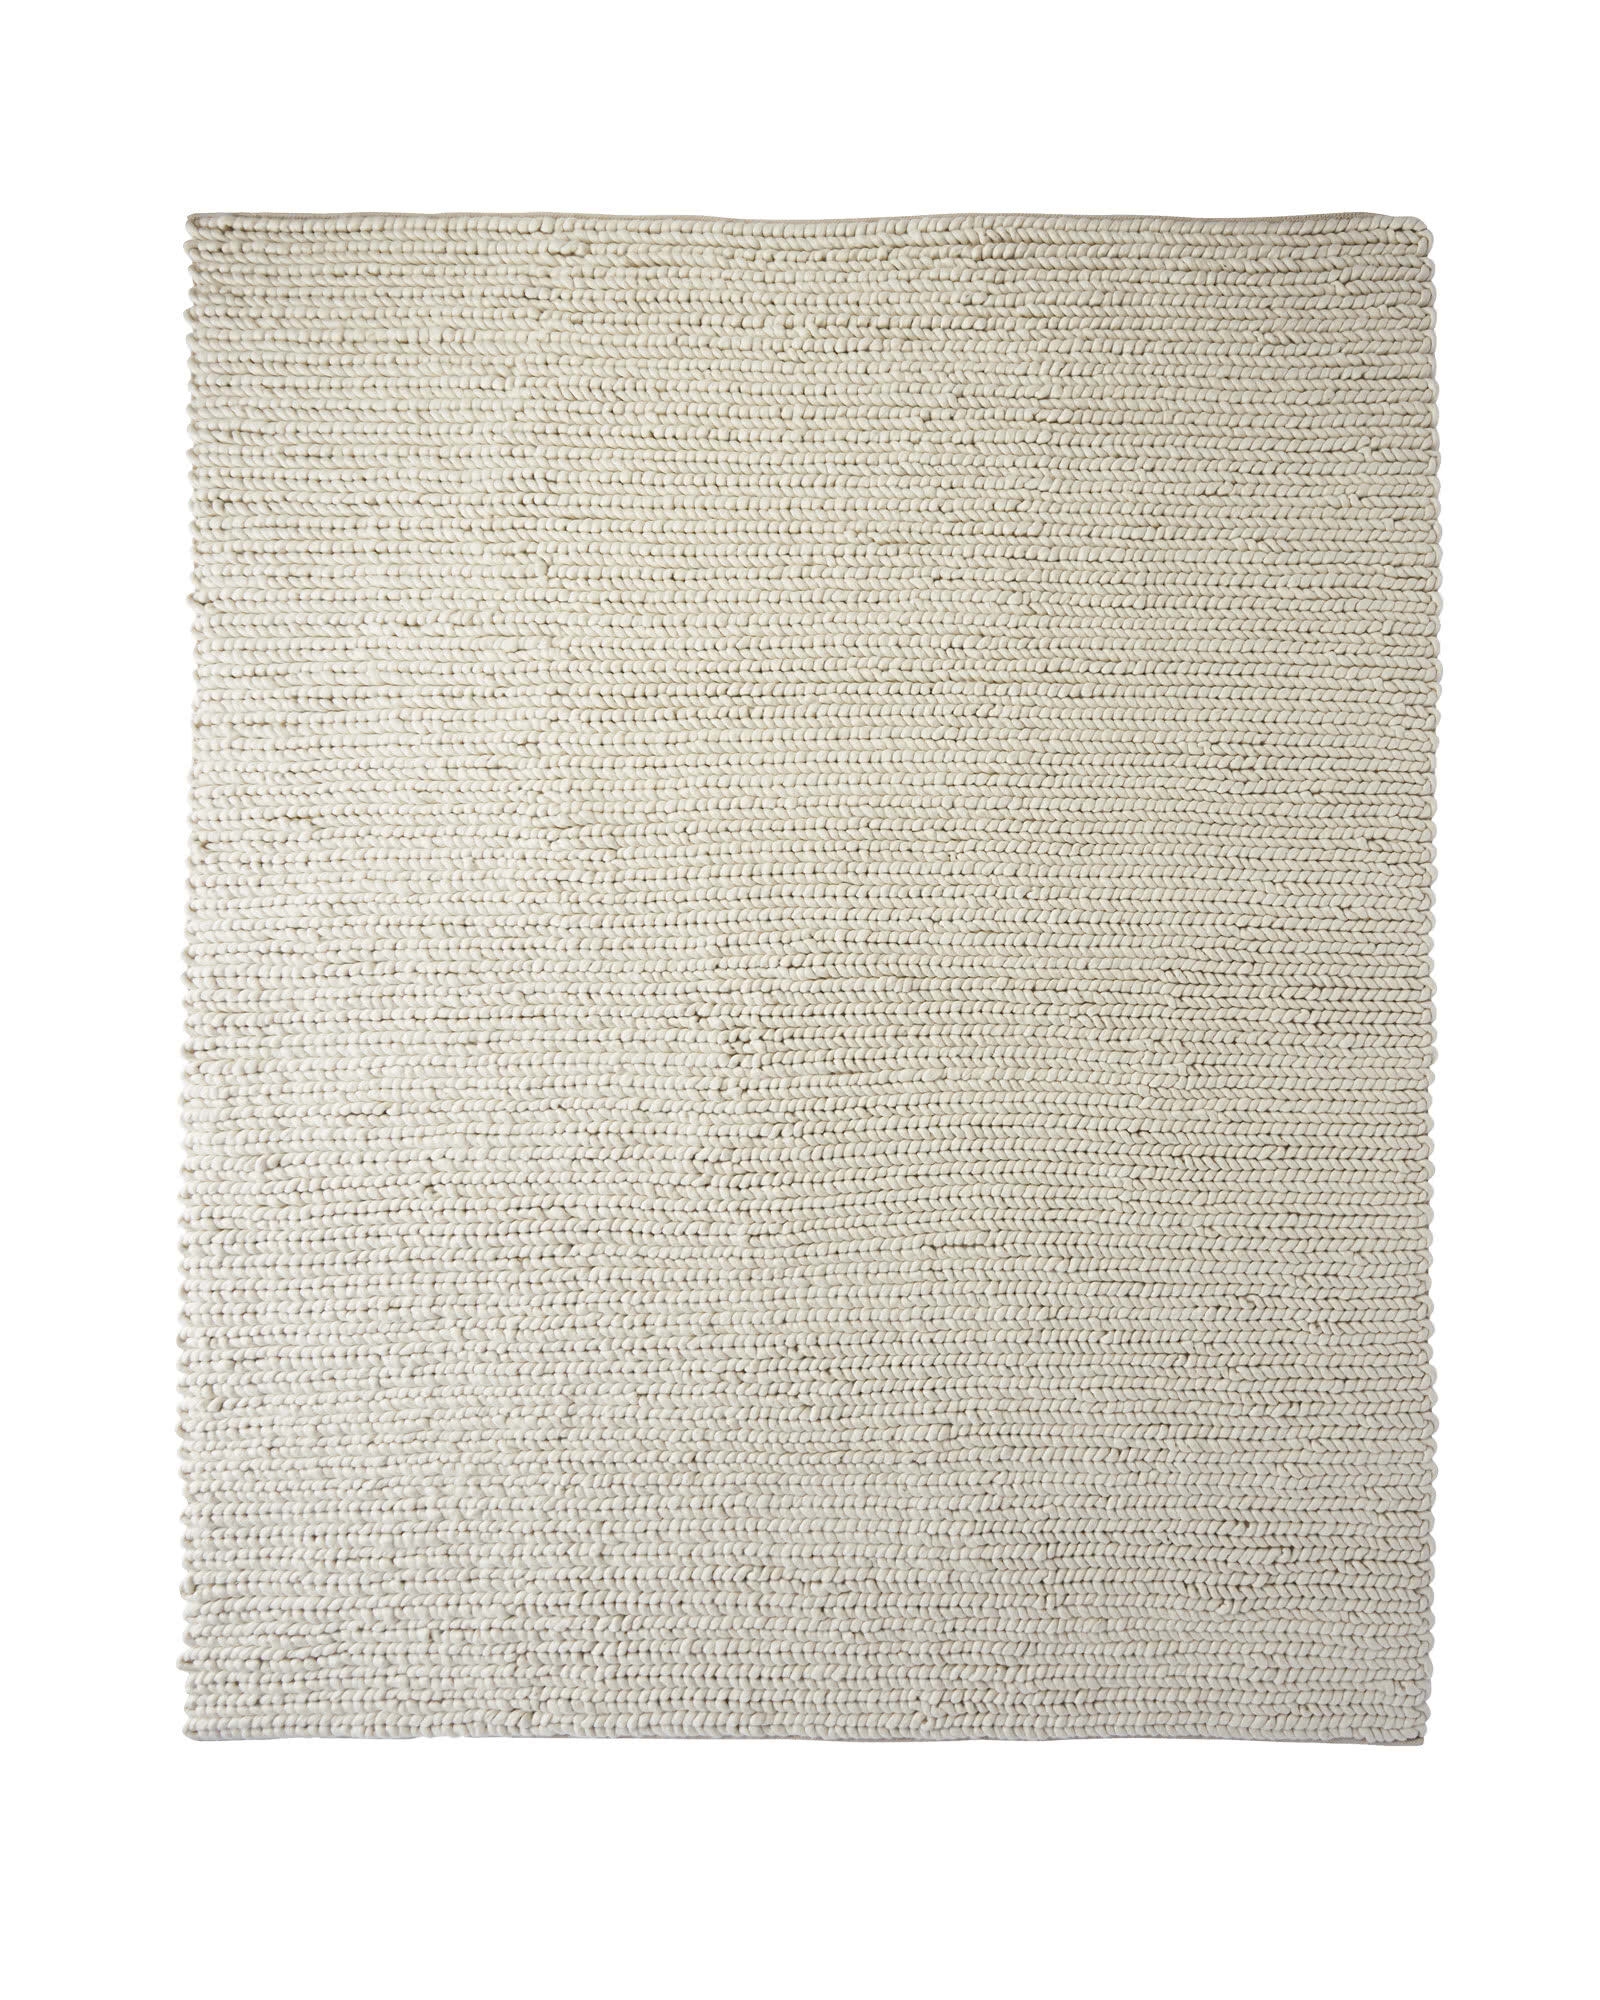 Braided Wool Rug - Image 0